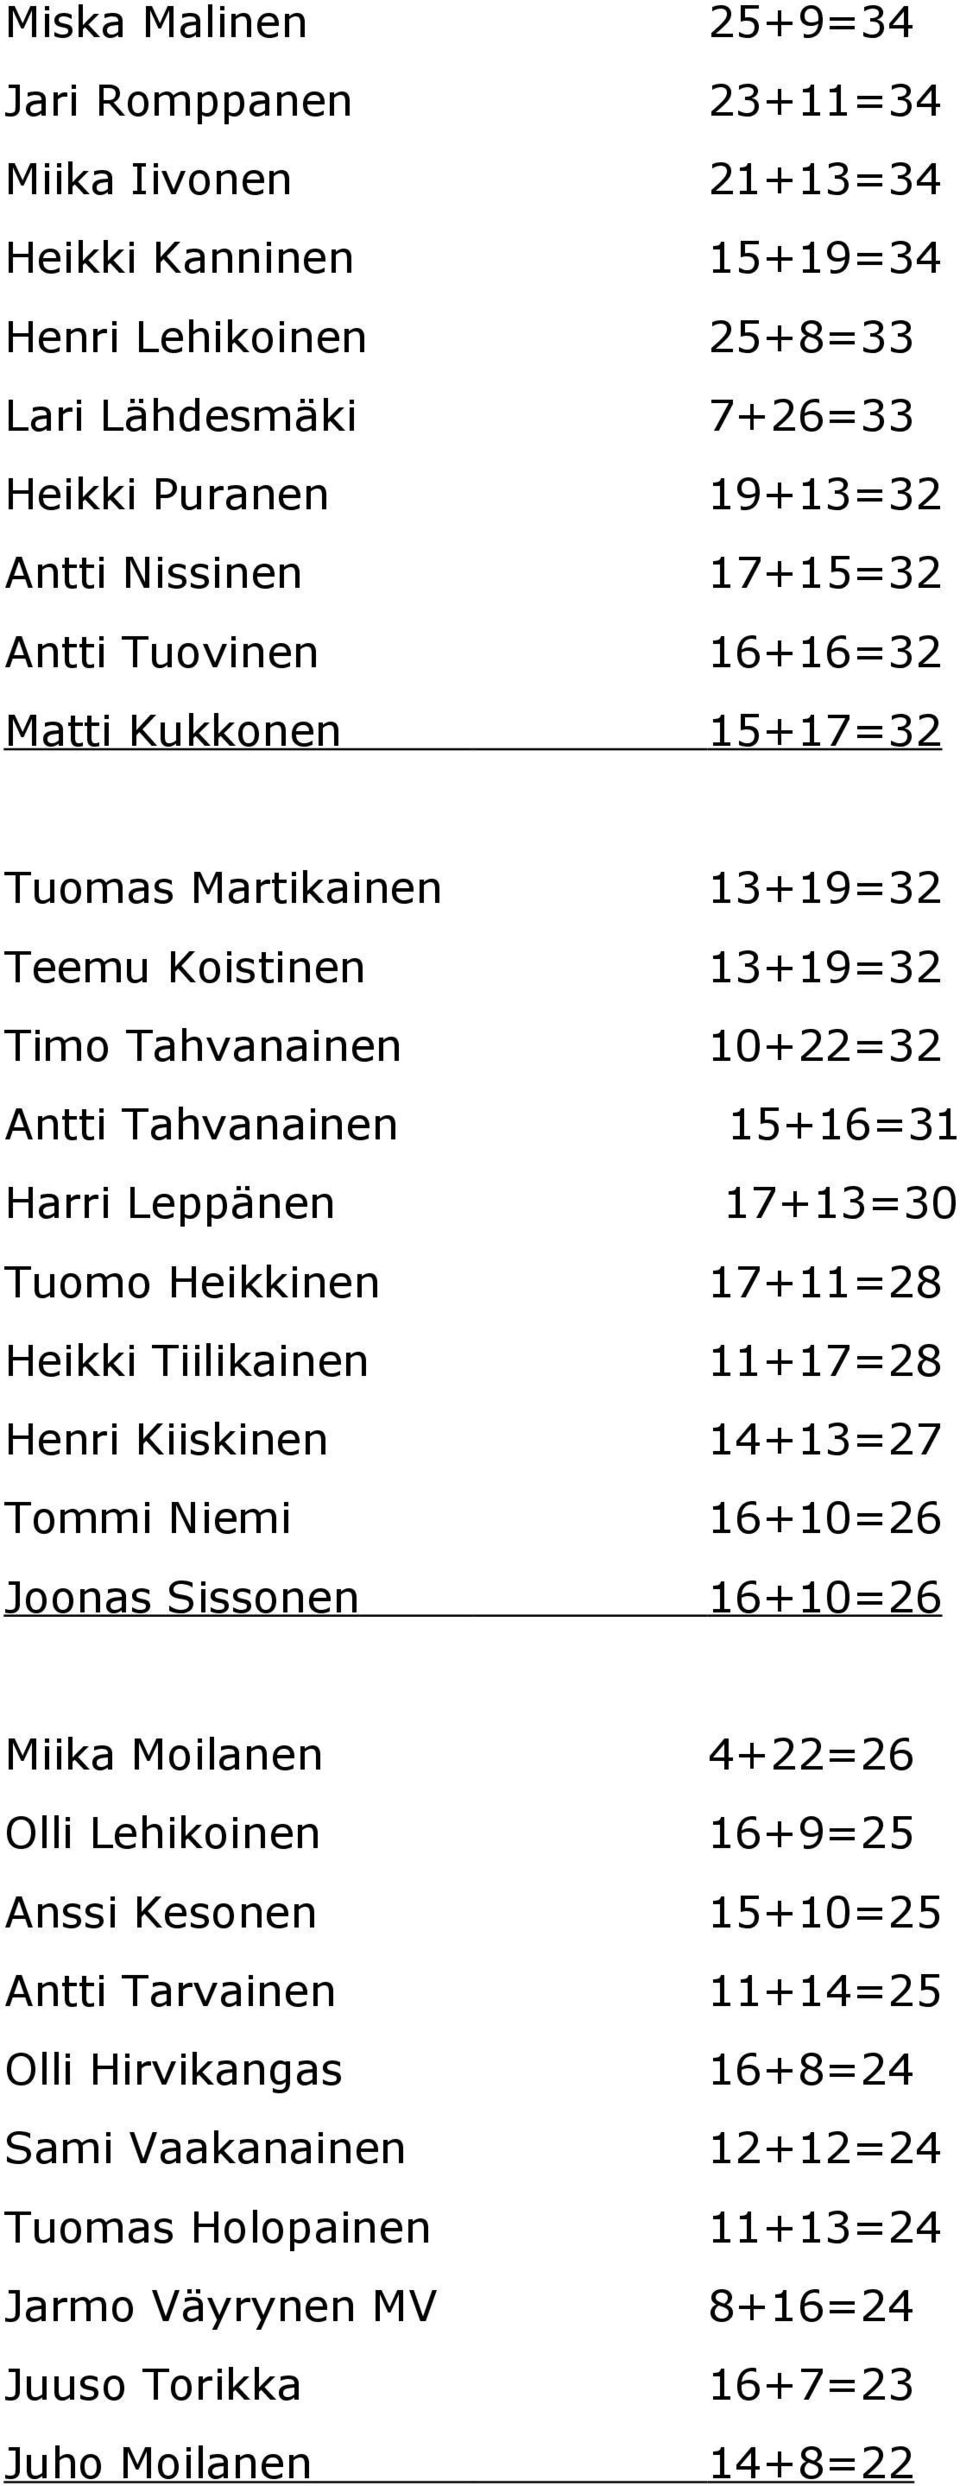 17+13=30 Tuomo Heikkinen 17+11=28 Heikki Tiilikainen 11+17=28 Henri Kiiskinen 14+13=27 Tommi Niemi 16+10=26 Joonas Sissonen 16+10=26 Miika Moilanen 4+22=26 Olli Lehikoinen 16+9=25